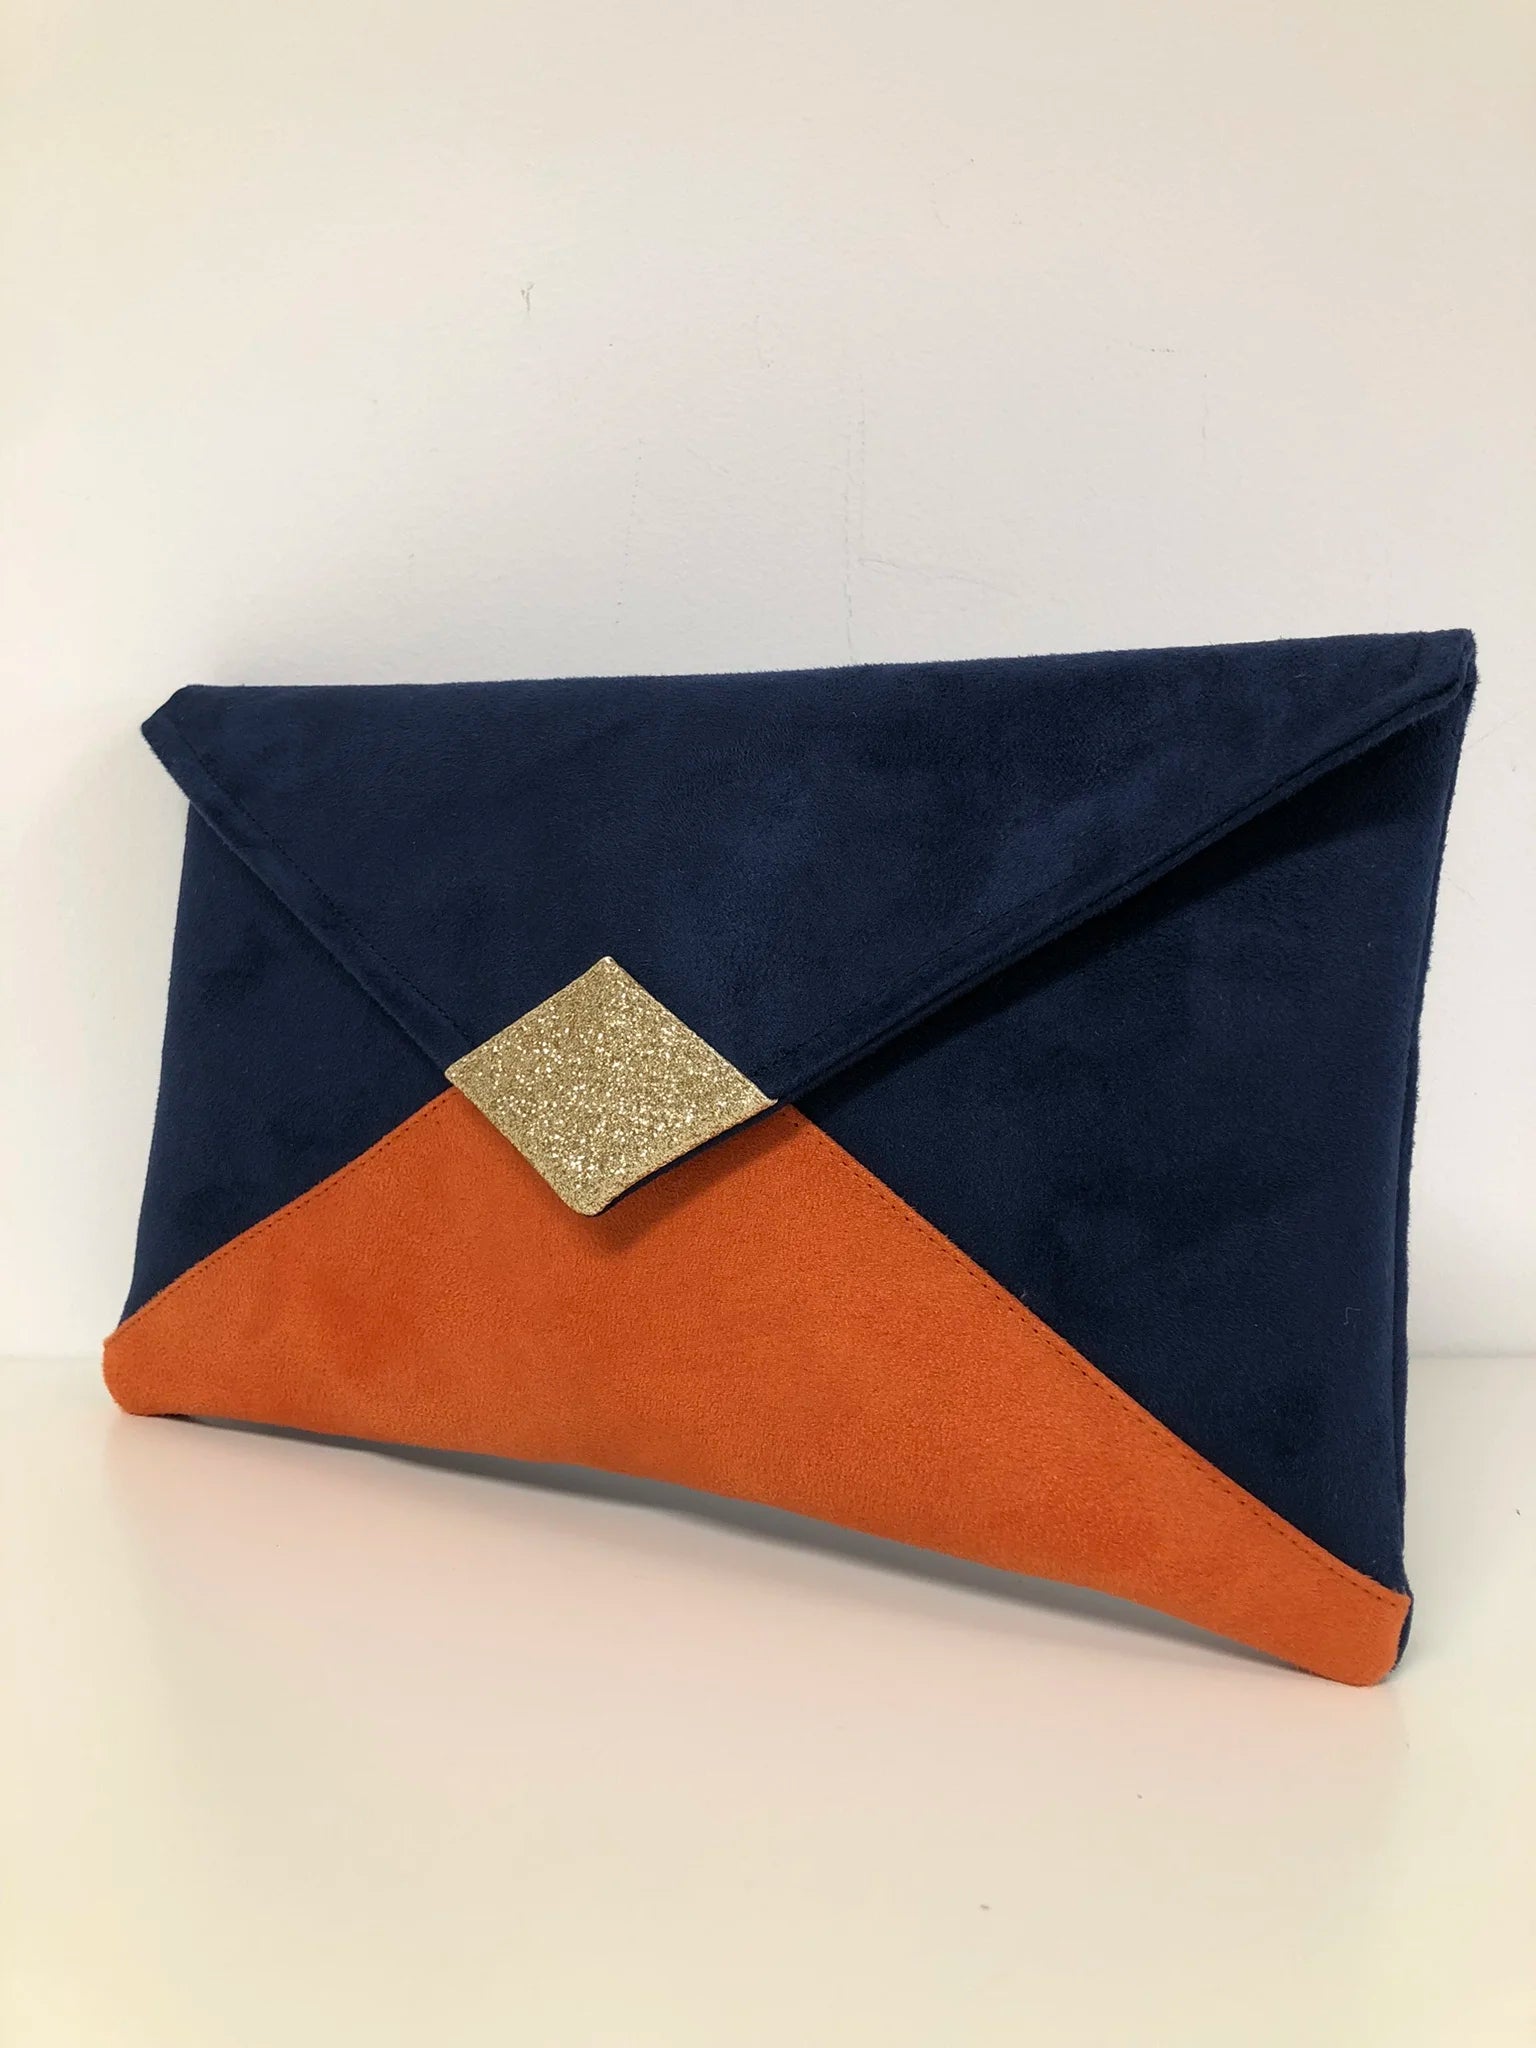 le sac pochette Isa bleu marine et orange à paillettes dorées, sans chainette amovible.